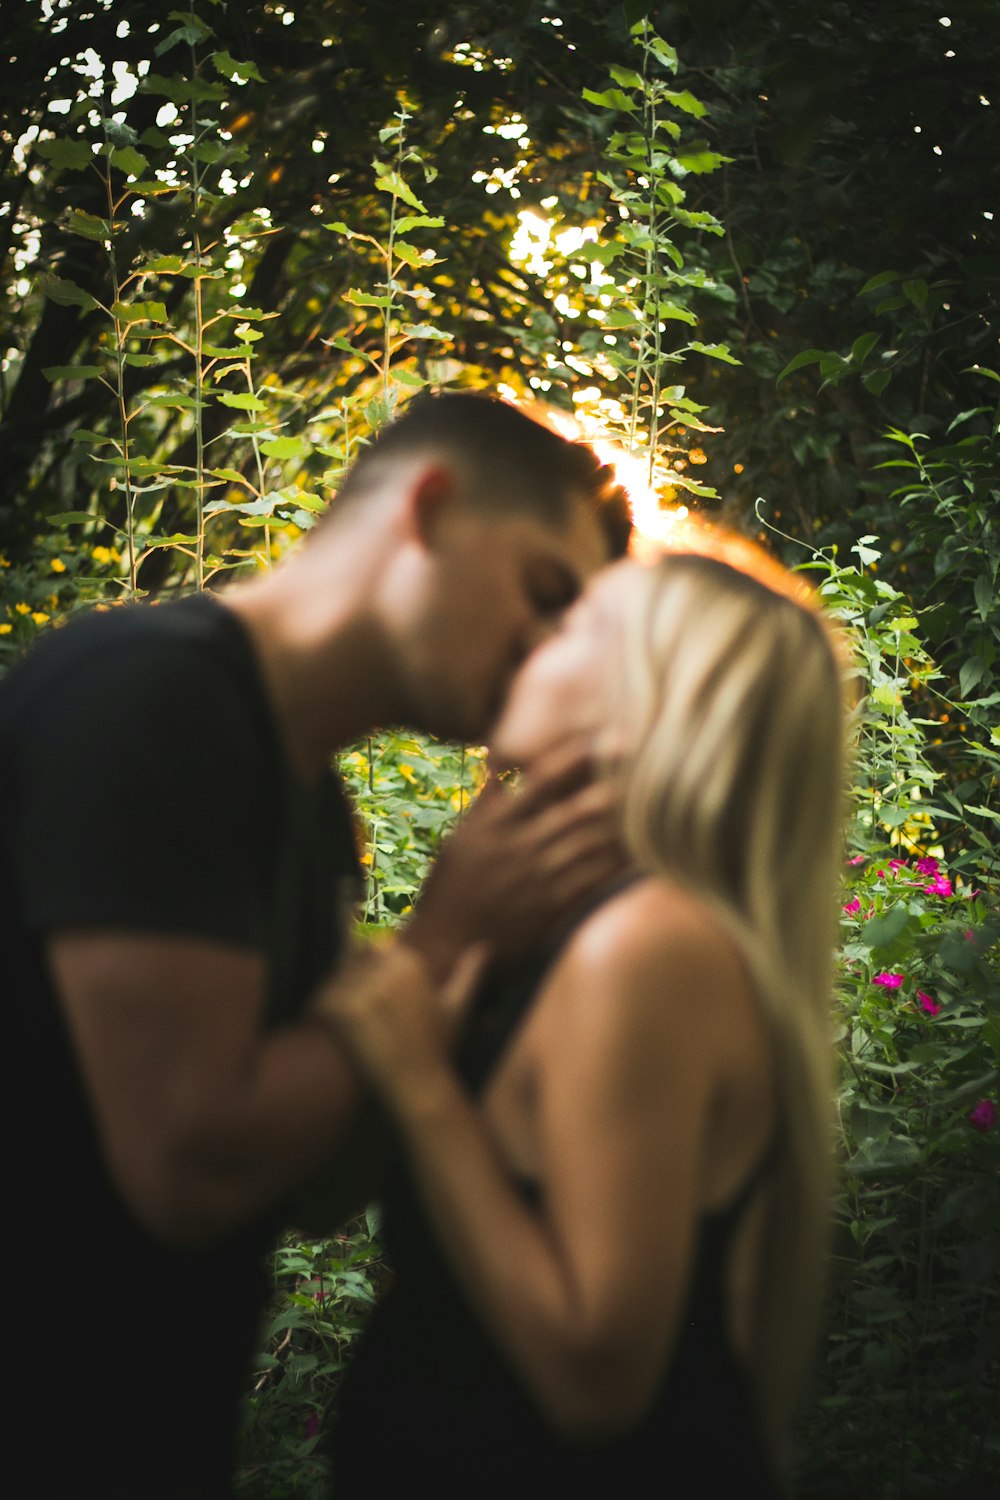 Mann und Frau küssen sich tagsüber unter grünen Bäumen